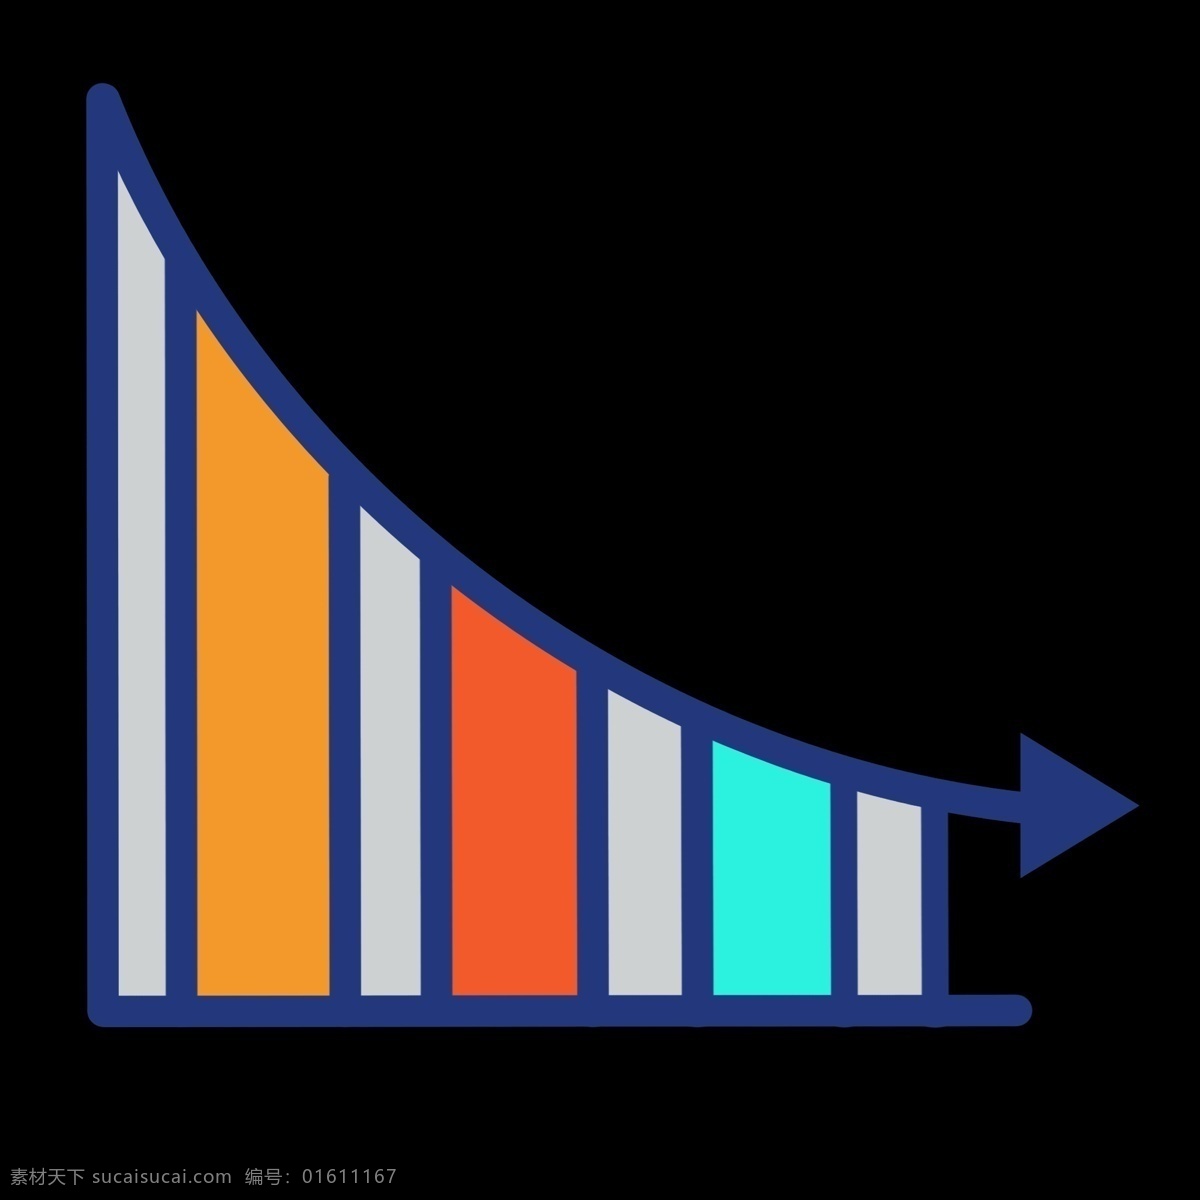 彩色 数据统计 趋势 图 免 抠 下降箭头 数据收集 扁平化 公司 图标 金融理财 销售额 用户分析 占比